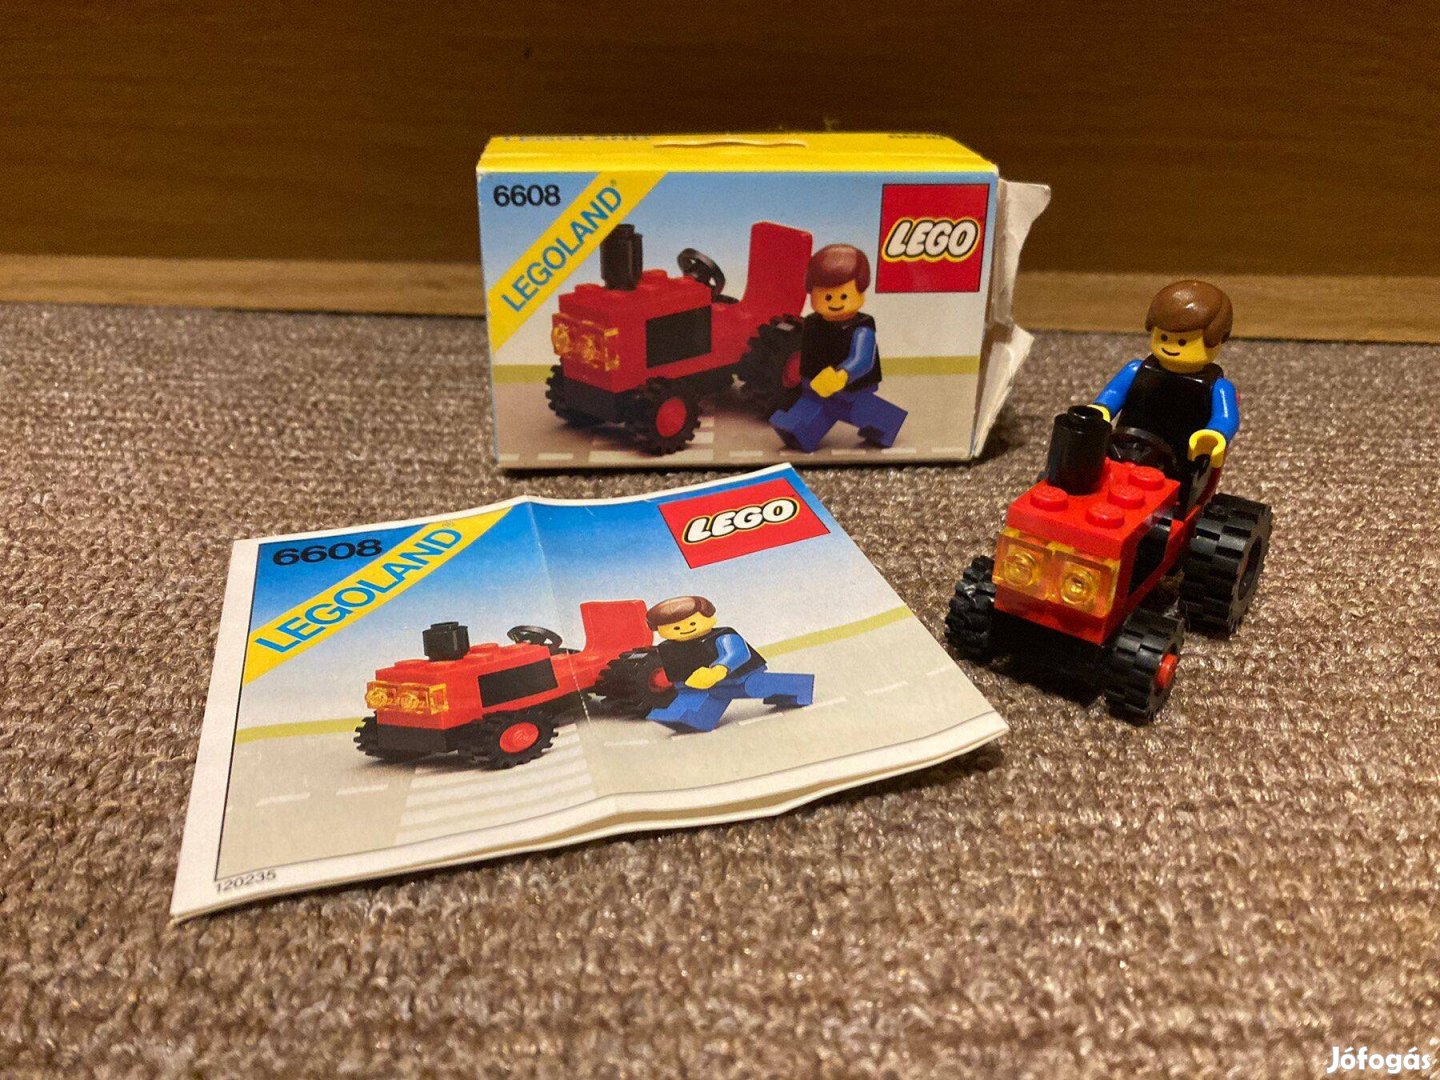 Lego 6608 Town